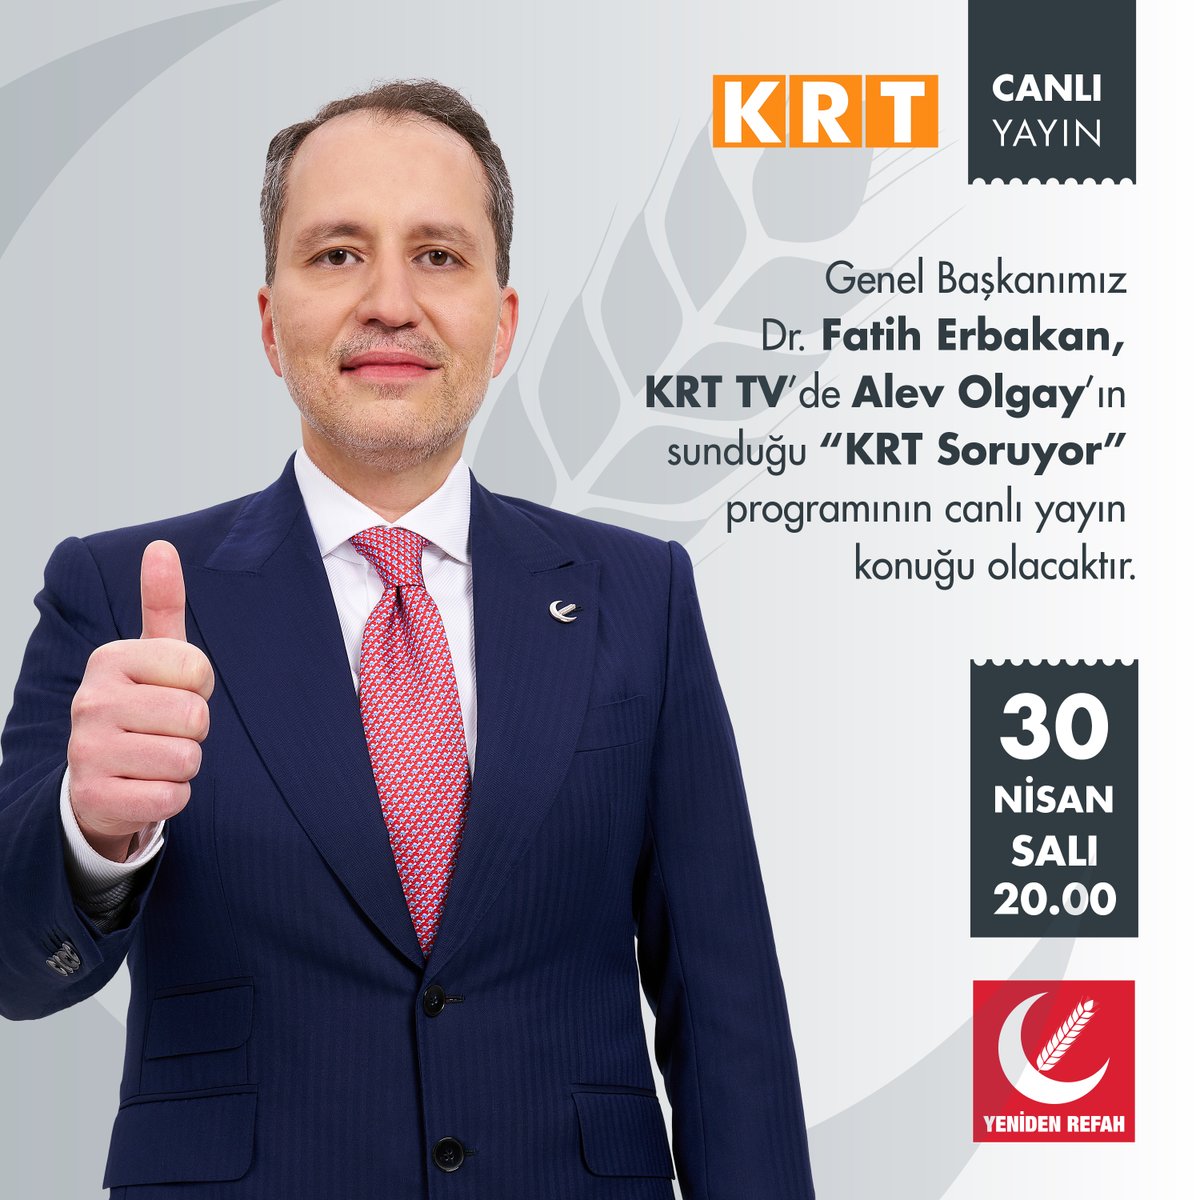 Genel Başkanımız Dr. Fatih Erbakan, KRT TV’de Alev Olgay’ın sunduğu “KRT Soruyor” programının canlı yayın konuğu olacaktır. 📅 30 Nisan Salı 🕐 20.00 📡 KRT TV